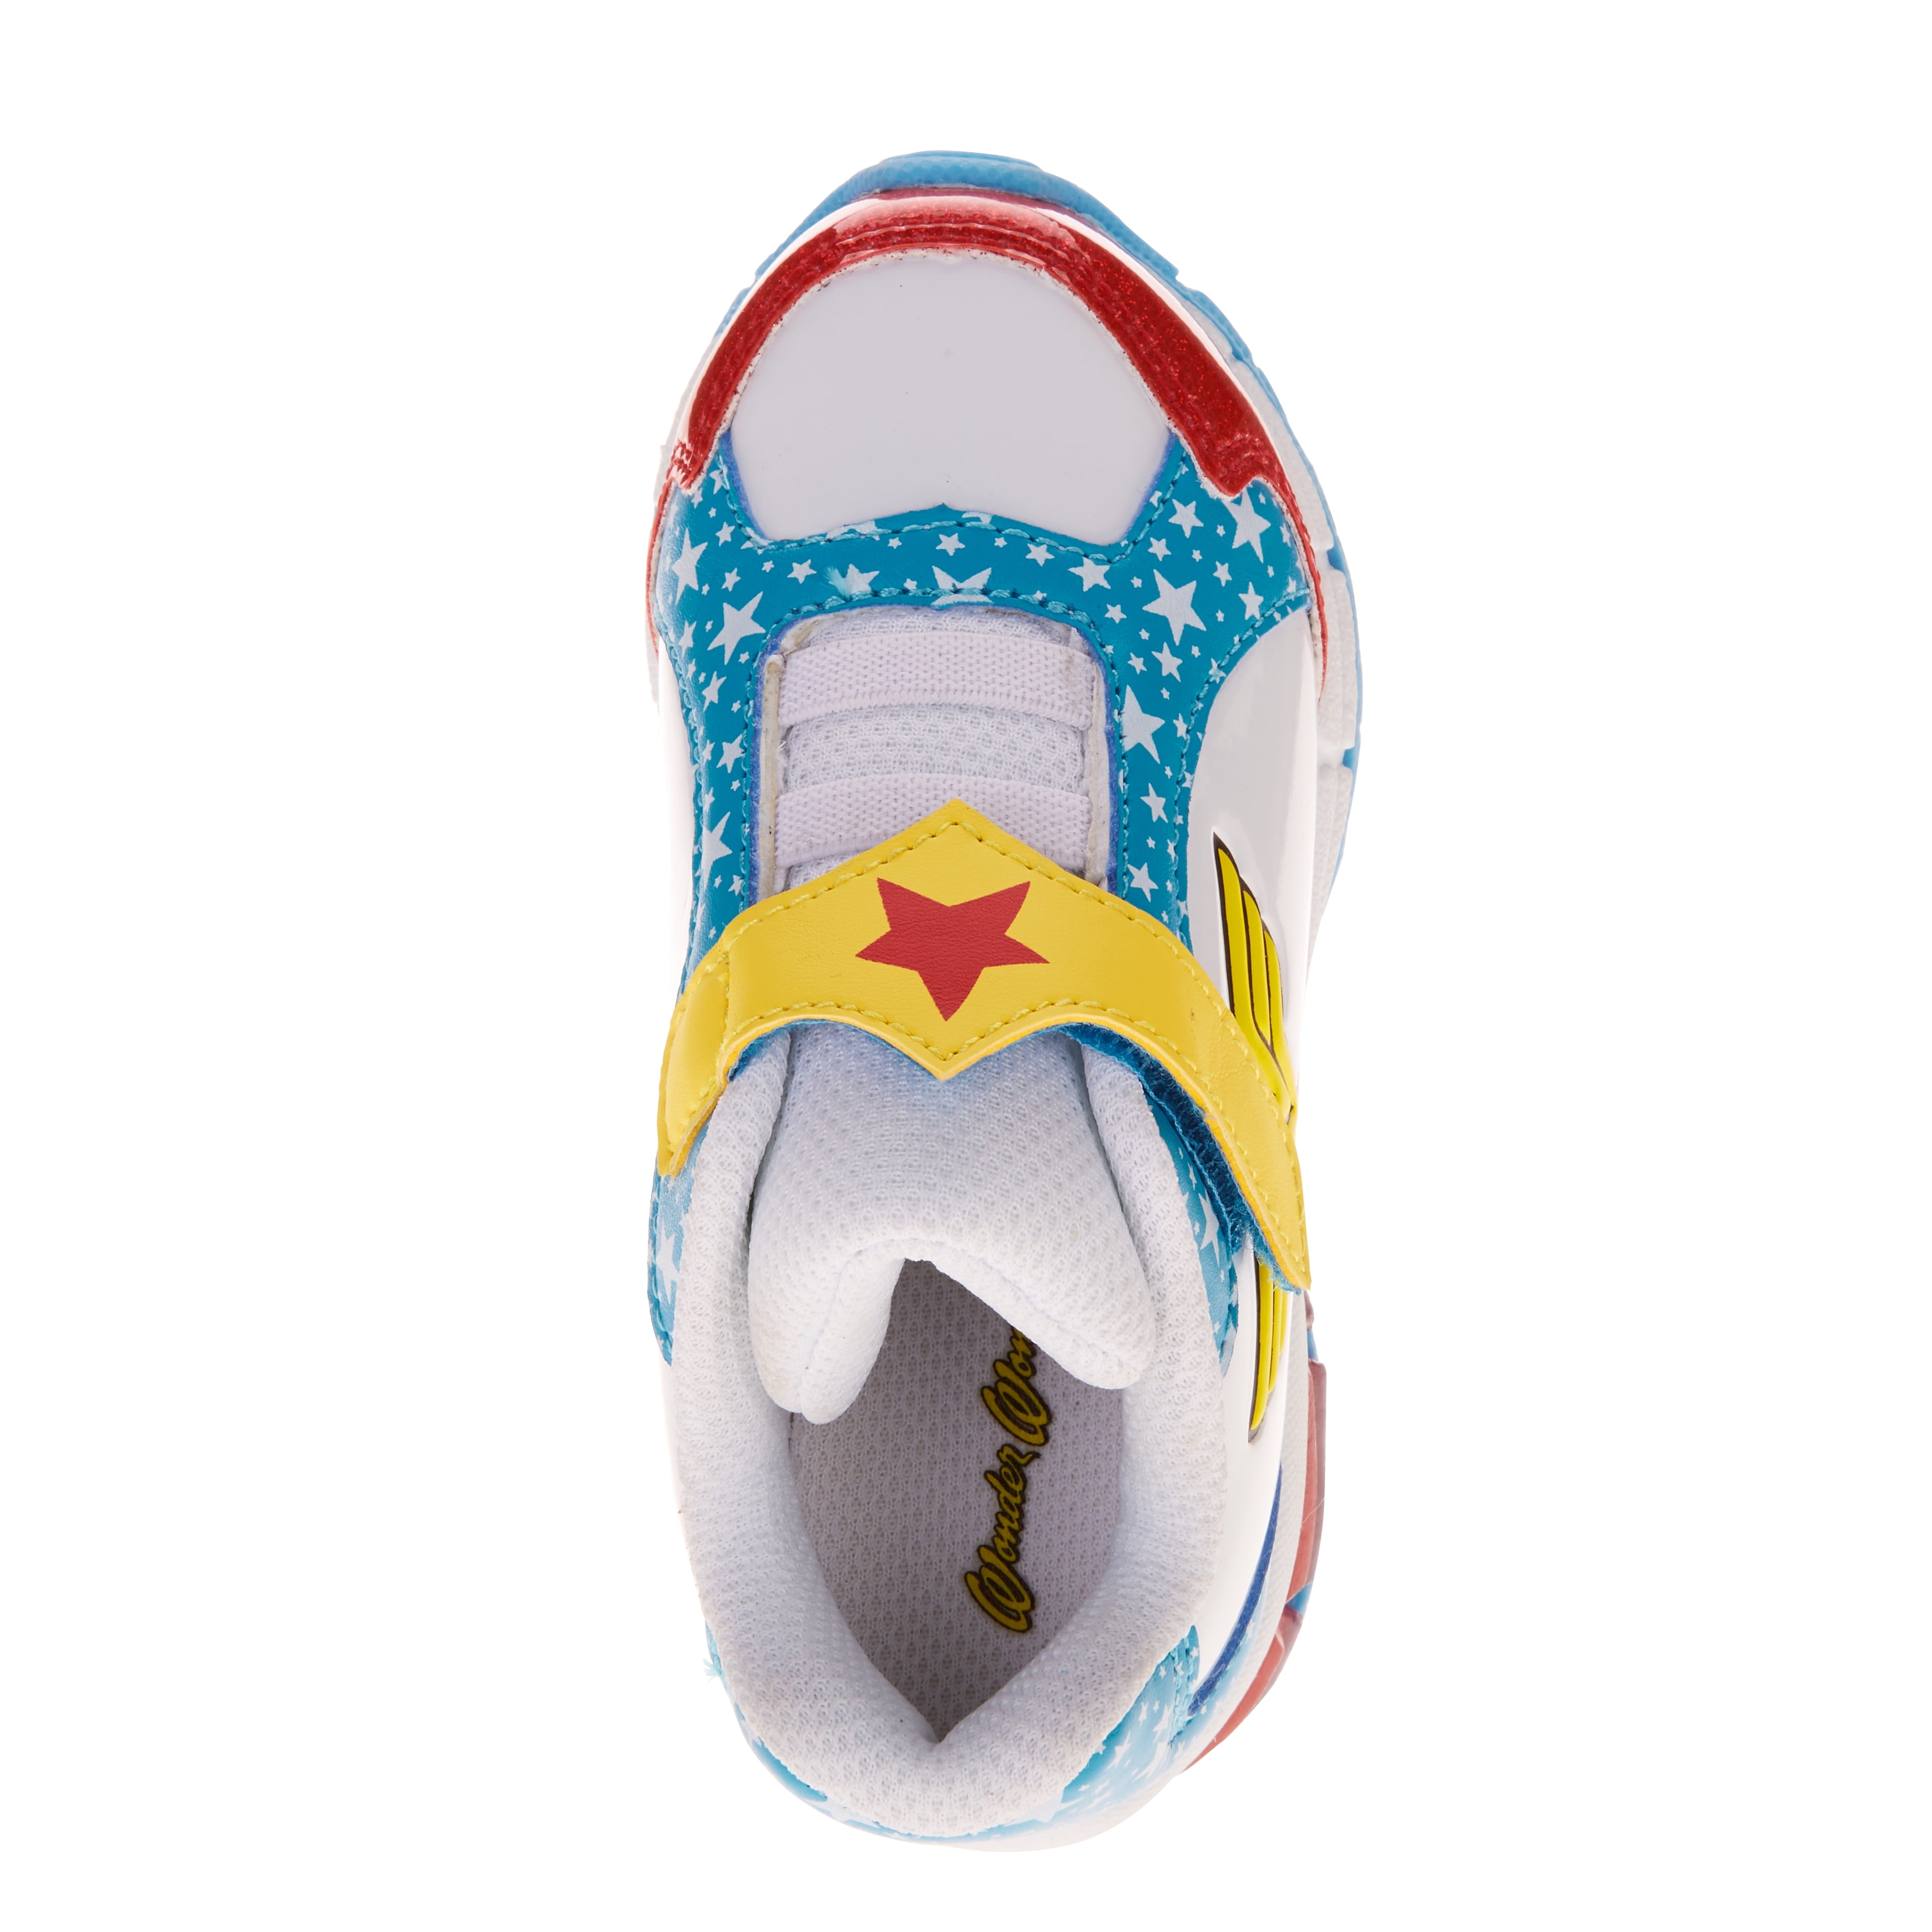 Girls Blinged Wonder Woman Converse Sneakers